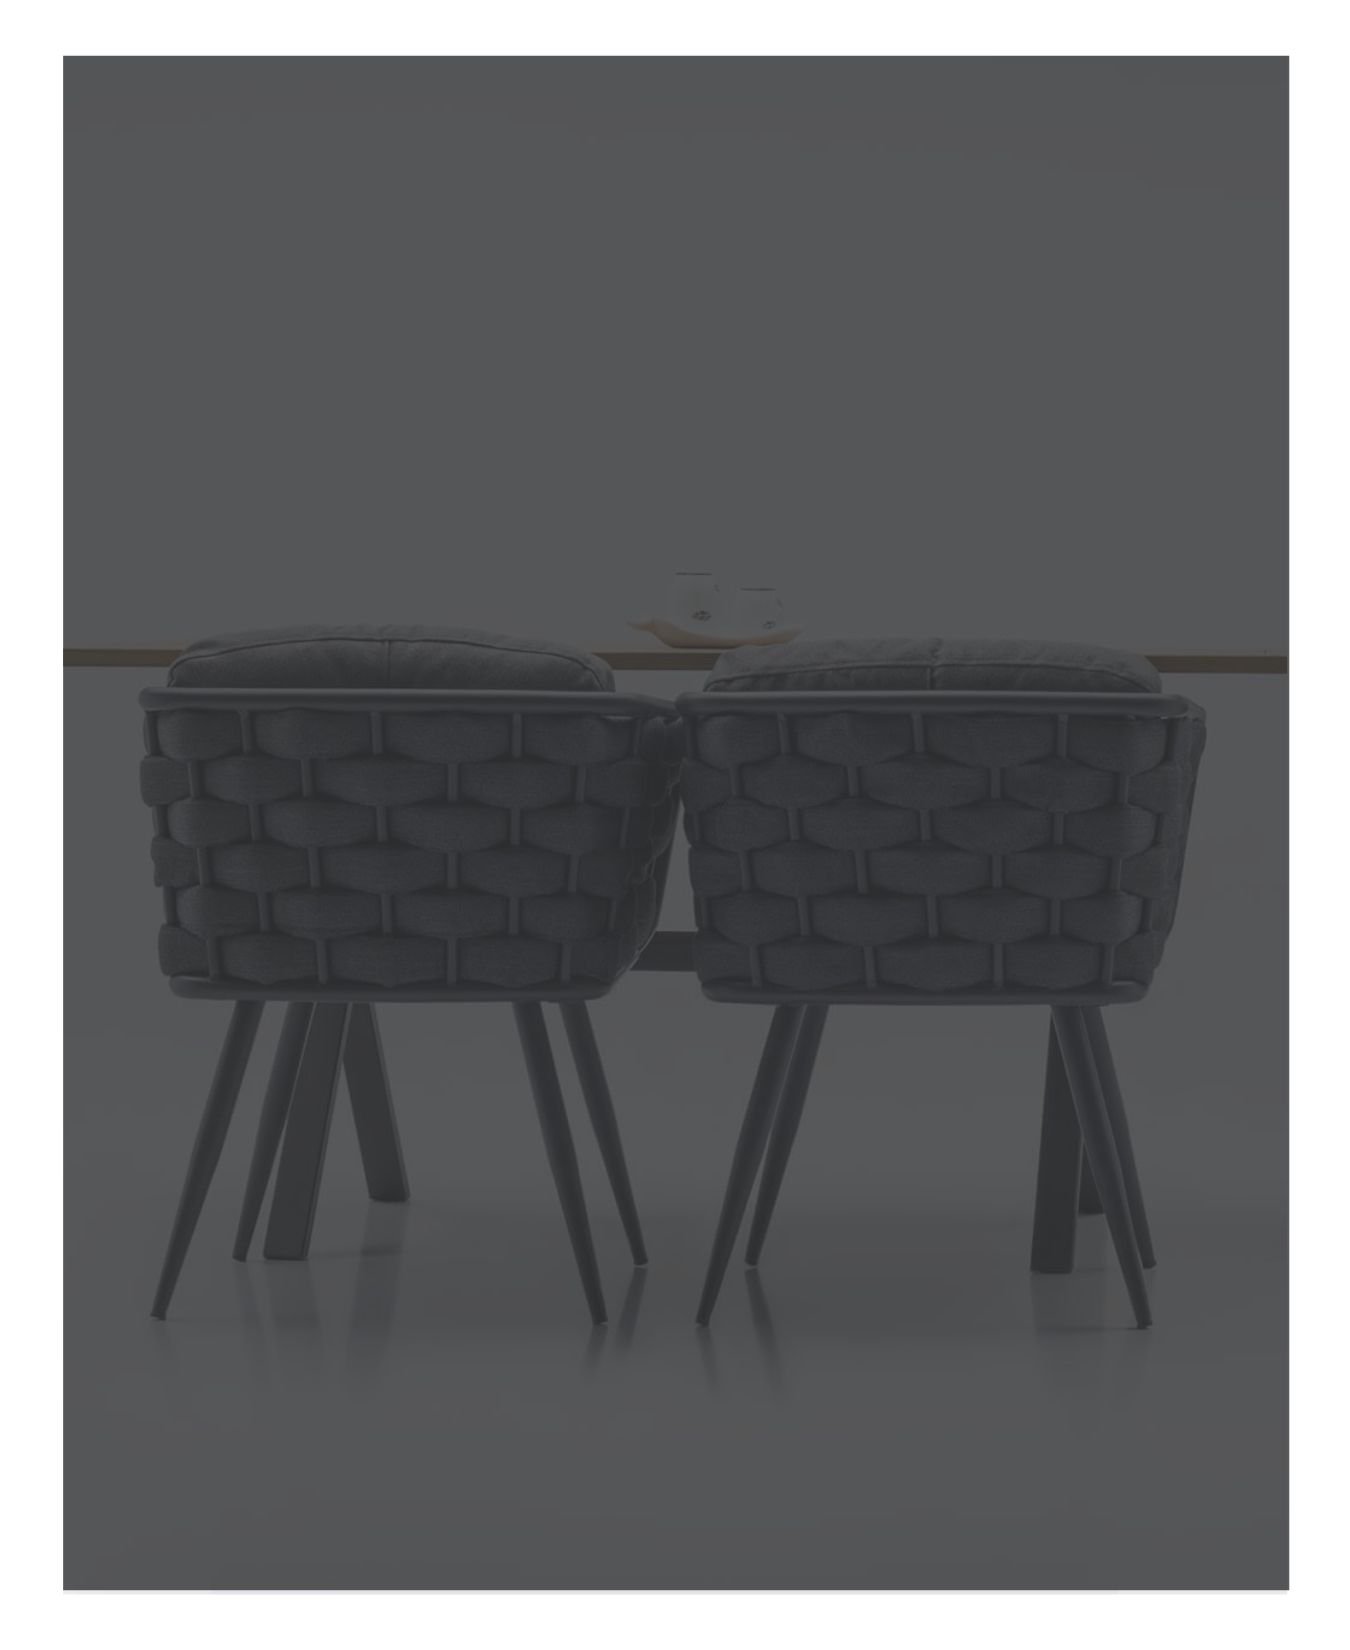 8 Kisilik Italyan Rattan Yemek Masasi Sandalyeler Bahce Mobilyalari Buy Yemek Masasi Italyan Yemek Sandalyeleri 8 Kisilik Rattan Yemek Masasi Bahce Mobilyalari Product On Alibaba Com